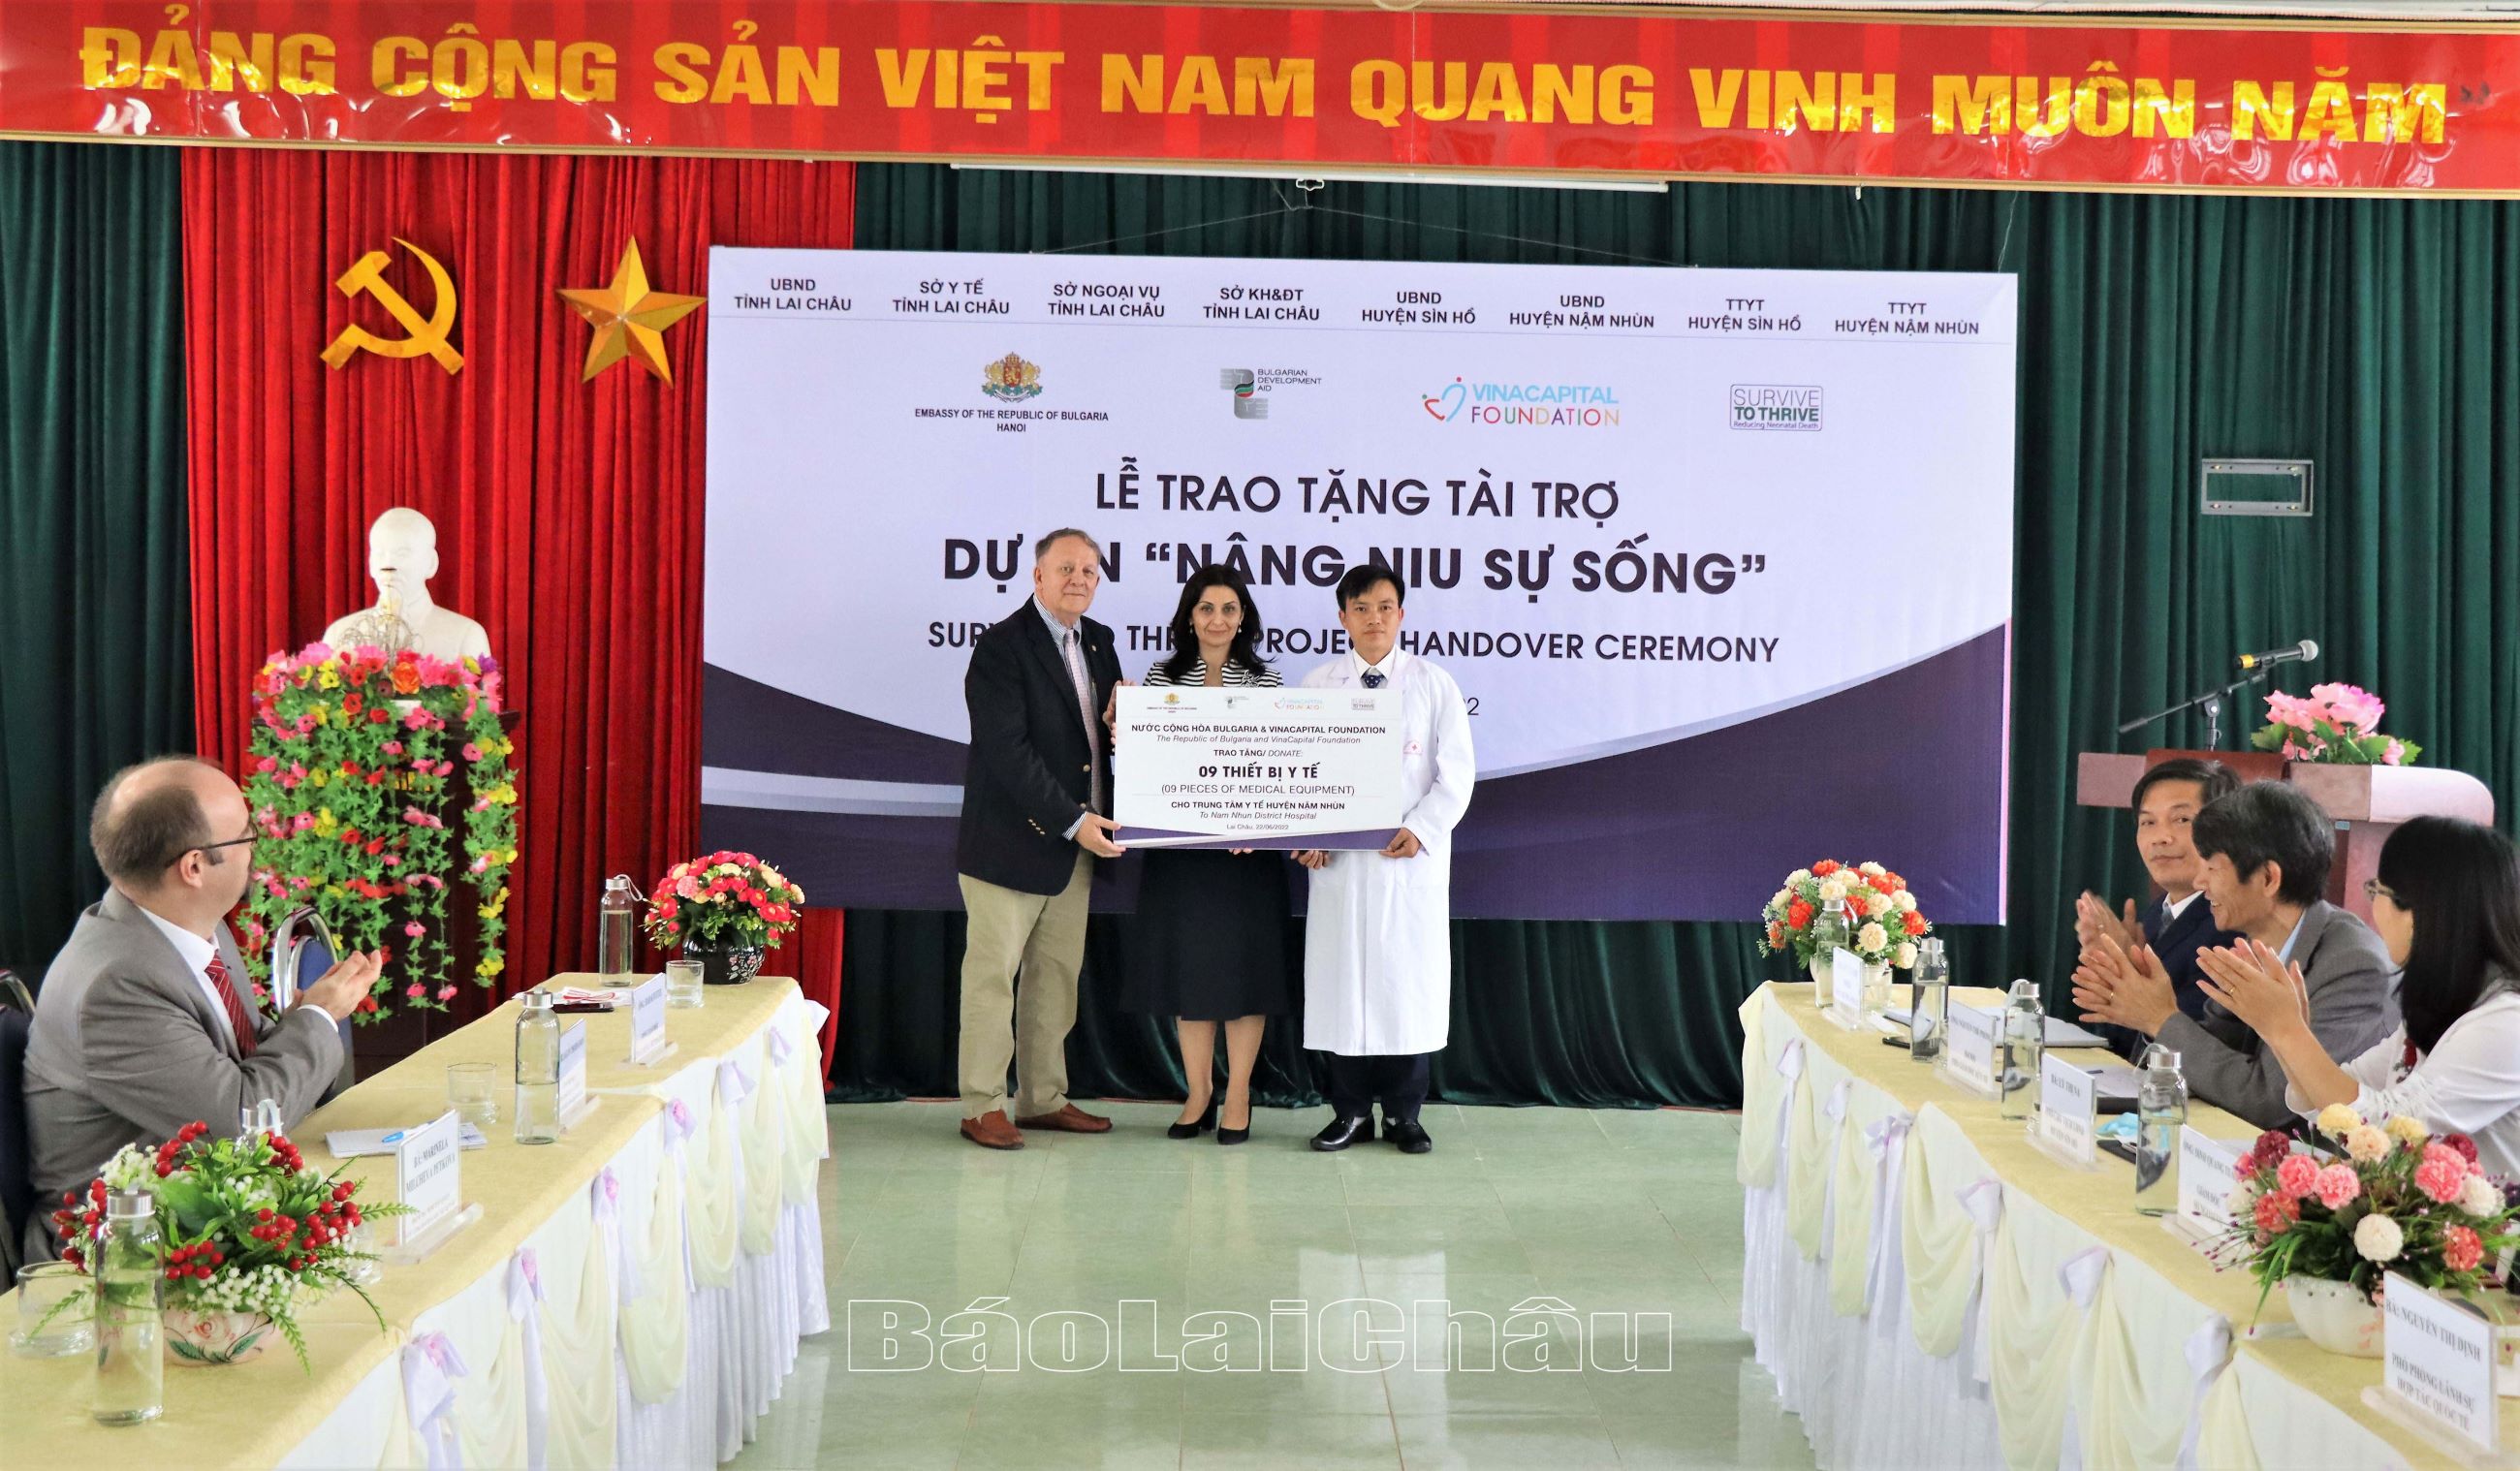 Bà Đại sứ cùng đoàn công tác trao tặng thiết bị chăm sóc trẻ sơ sinh cho Trung tâm Y tế huyện Nậm Nhùn.